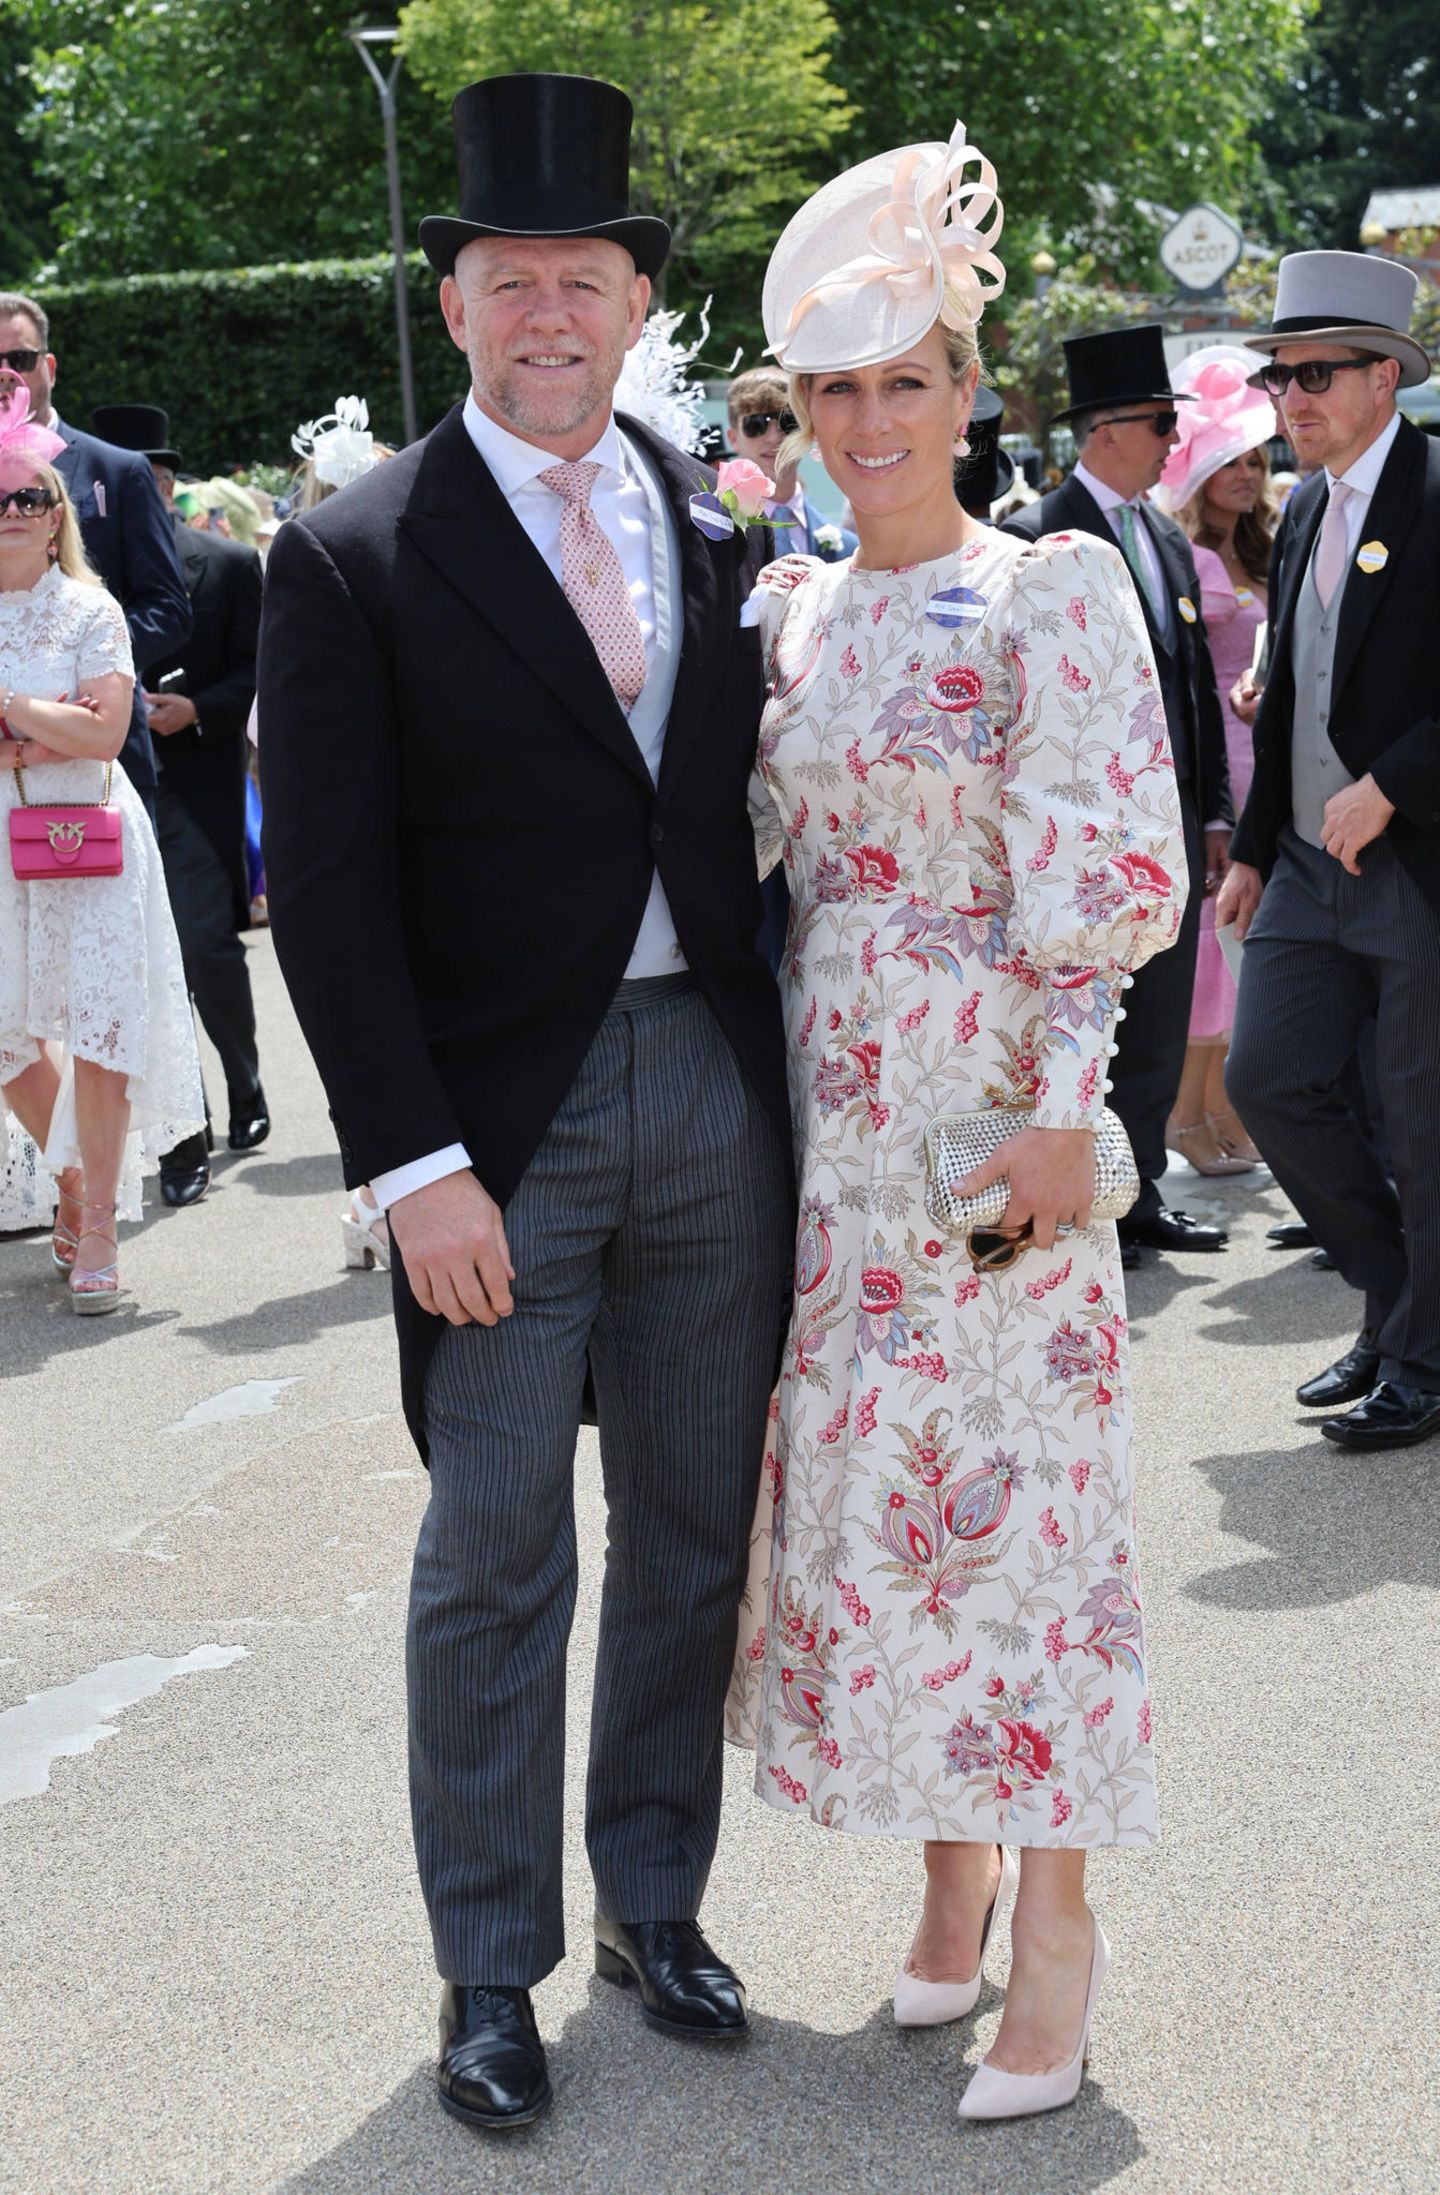 Richtig sommerlich wird's am zweiten Tag: Zara Tindall, hier mit Ehemann Mike, verzaubert in einem cremefarbenen, floralen Retro-Look der Londoner Designerin und Schneiderin Anna Mason.